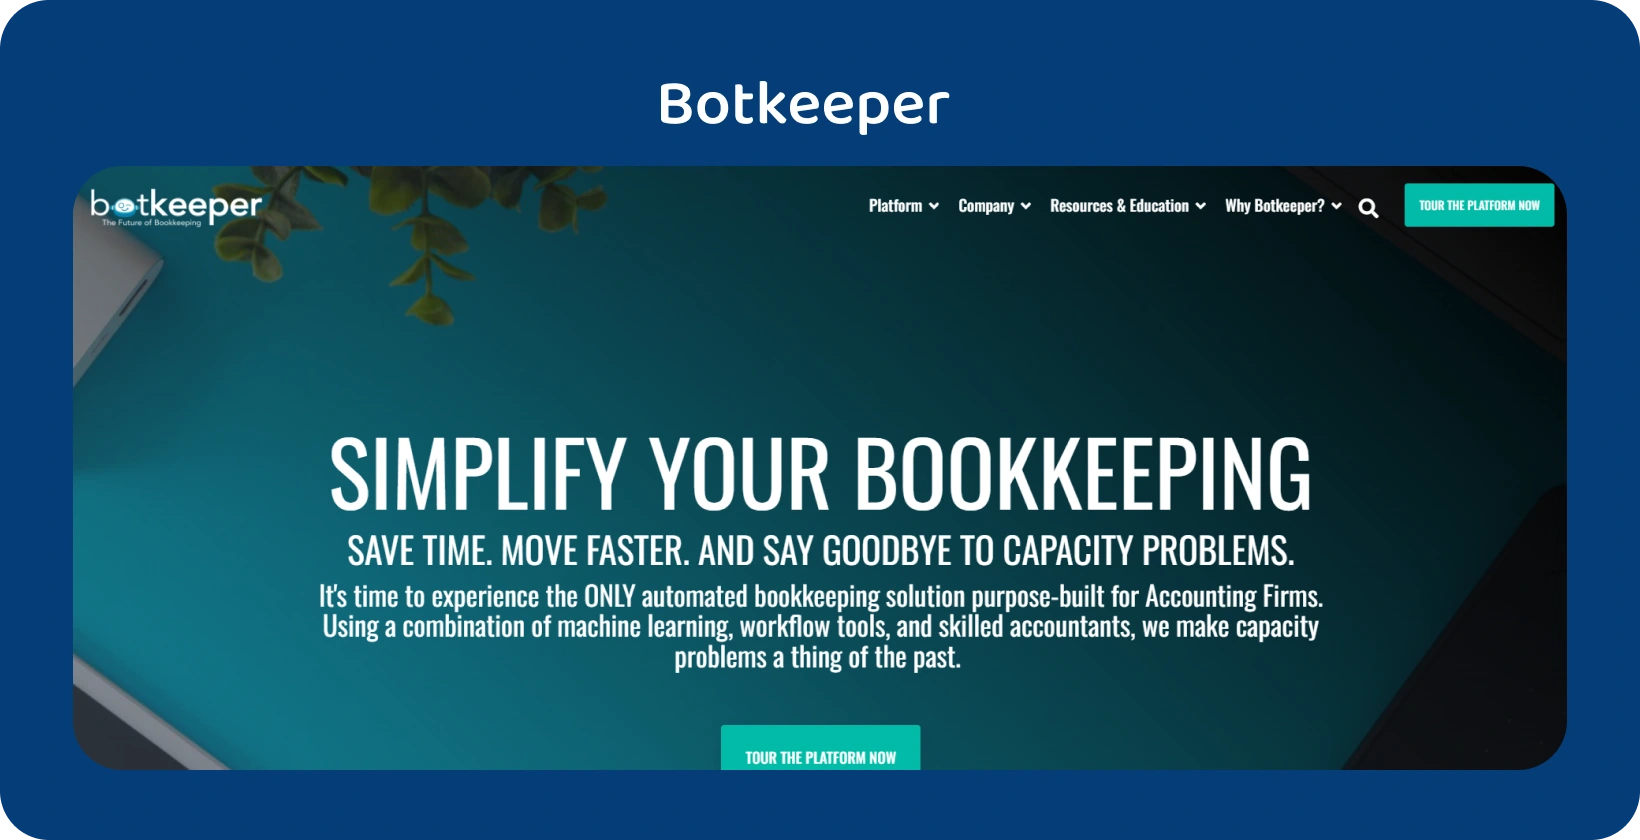 A página inicial do Botkeeper destaca a simplificação da contabilidade para contadores por meio de sua tecnologia de automação.